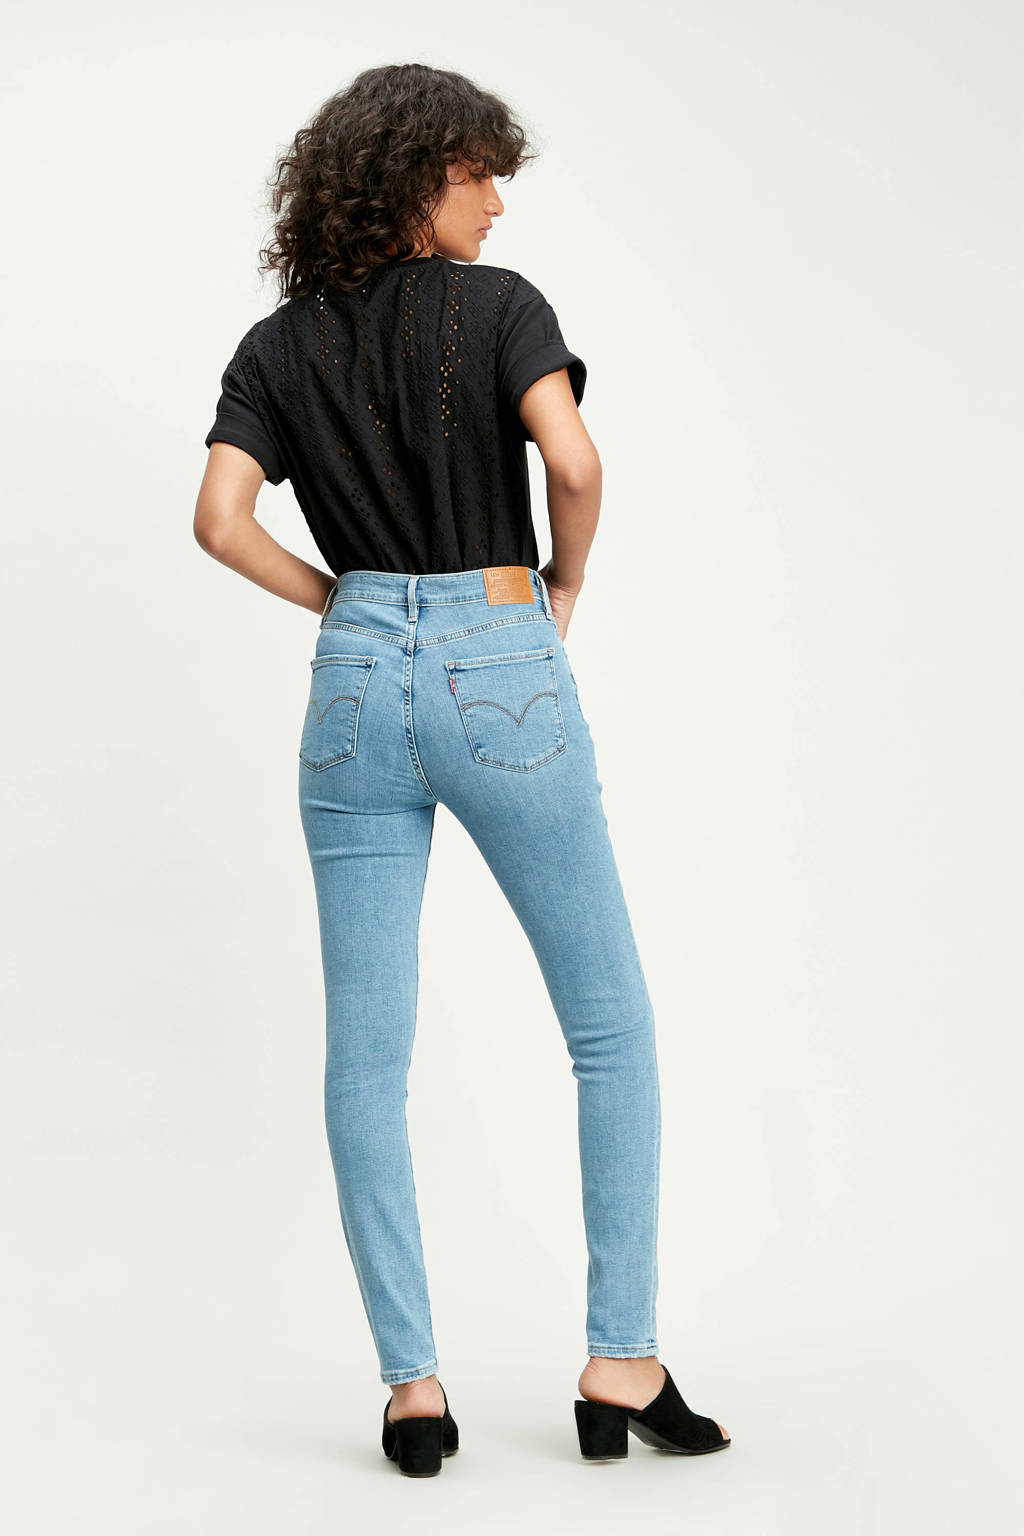 Brawl kader Alternatief voorstel Levi's 721 high waist skinny jeans lichtblauw | wehkamp